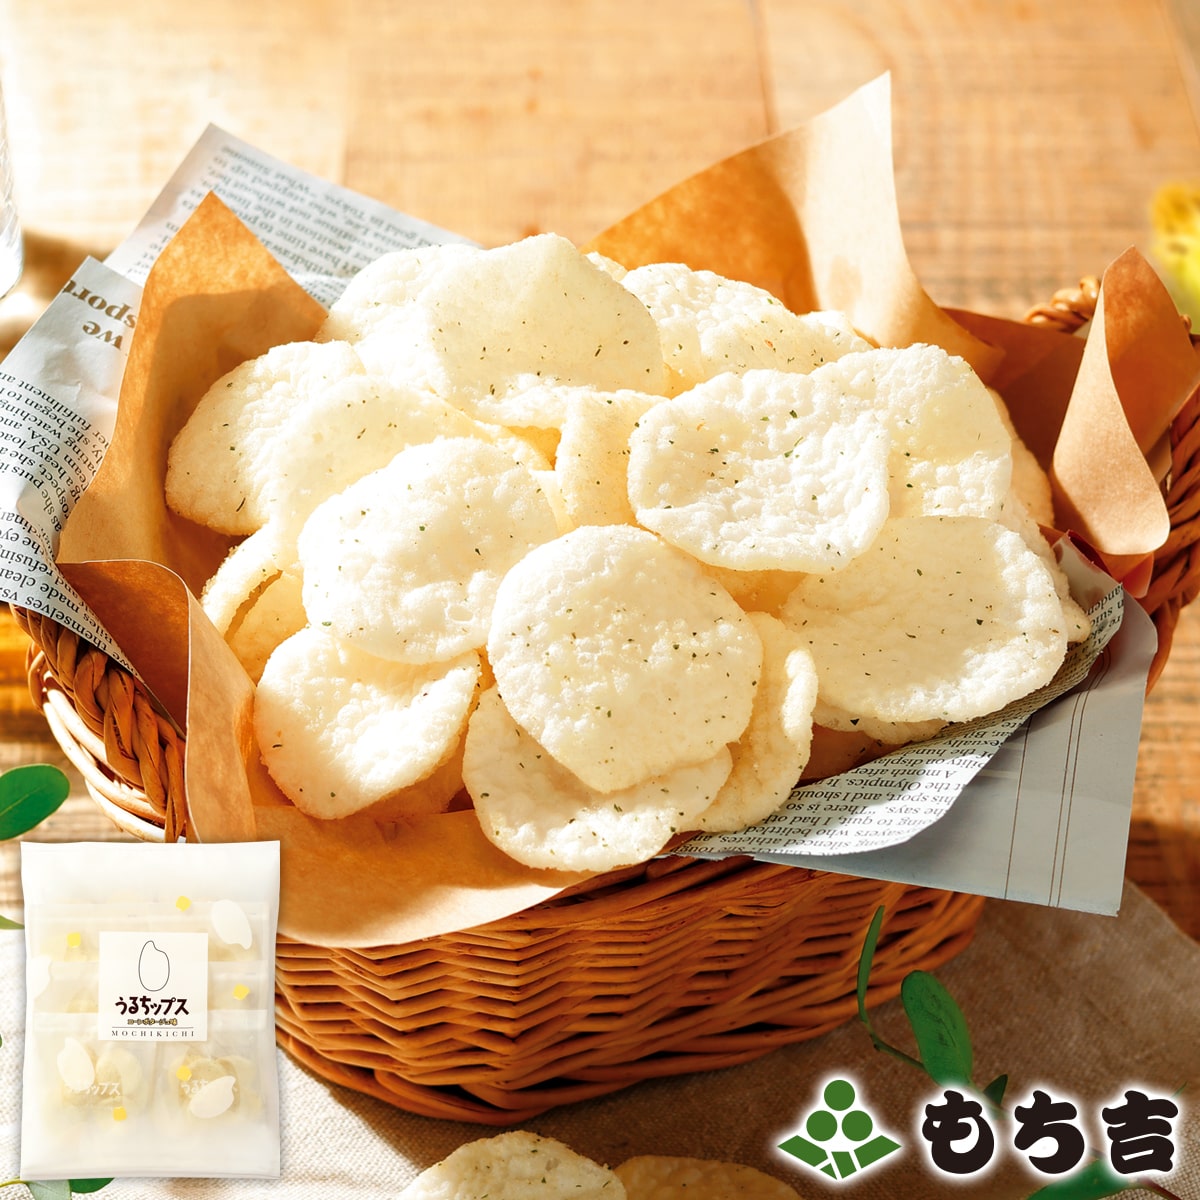 粳米洋芋片 玉米濃湯味 袋裝(80g) | 仙貝 | 米菓 | 日本必買 | 日本樂天熱銷